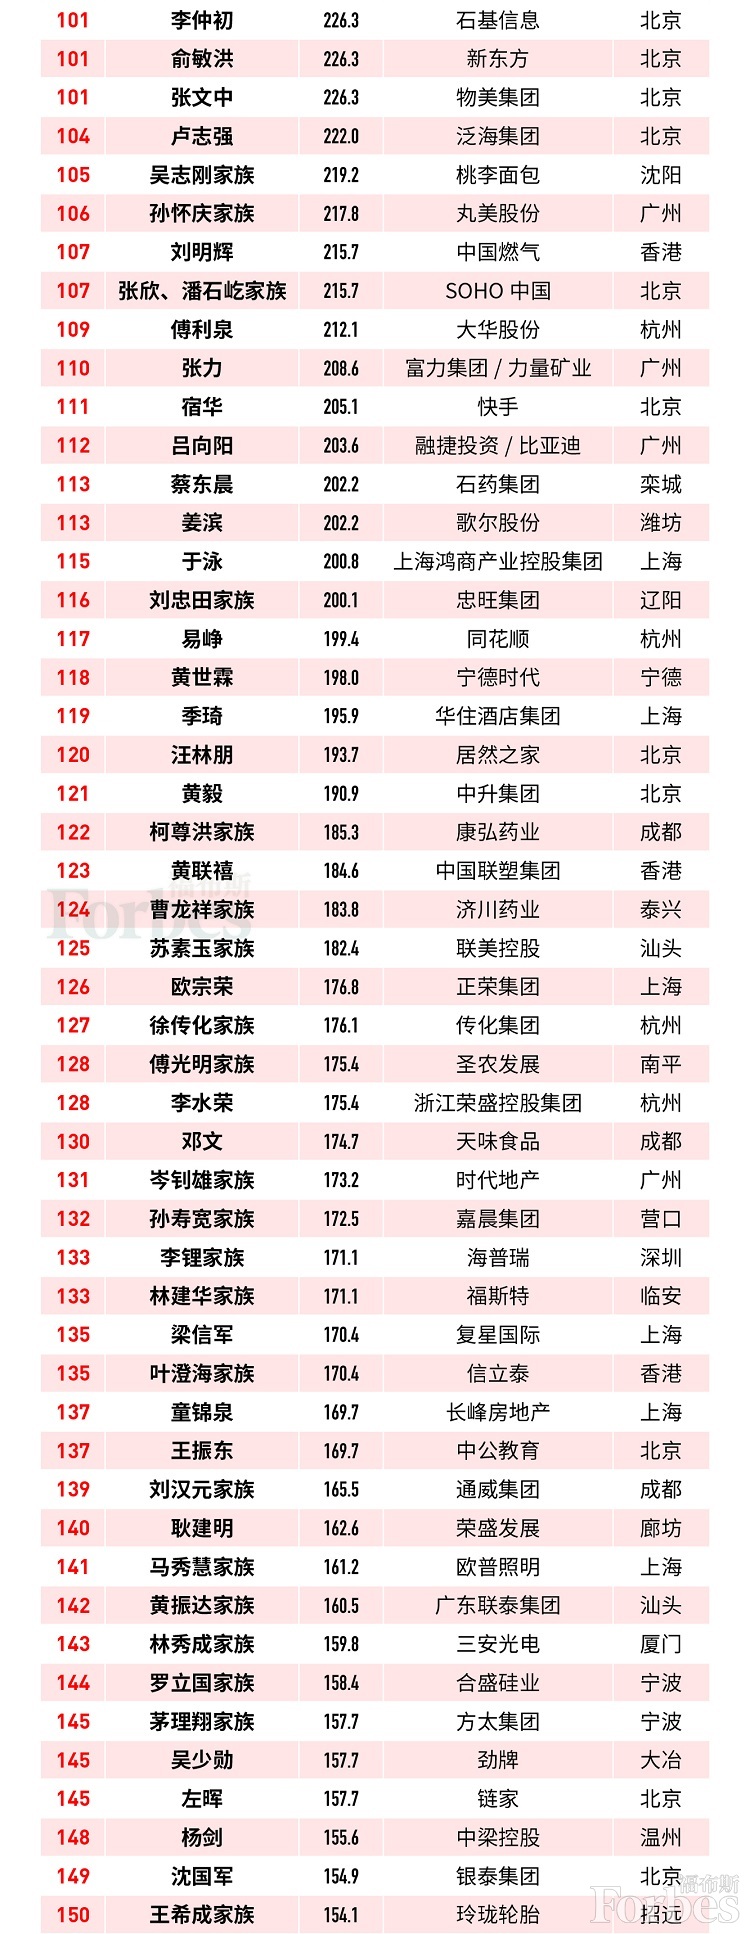 中国首富排行榜2019_中国富豪榜2020排行榜1000人榜单财富总额达到14.23万亿(2)